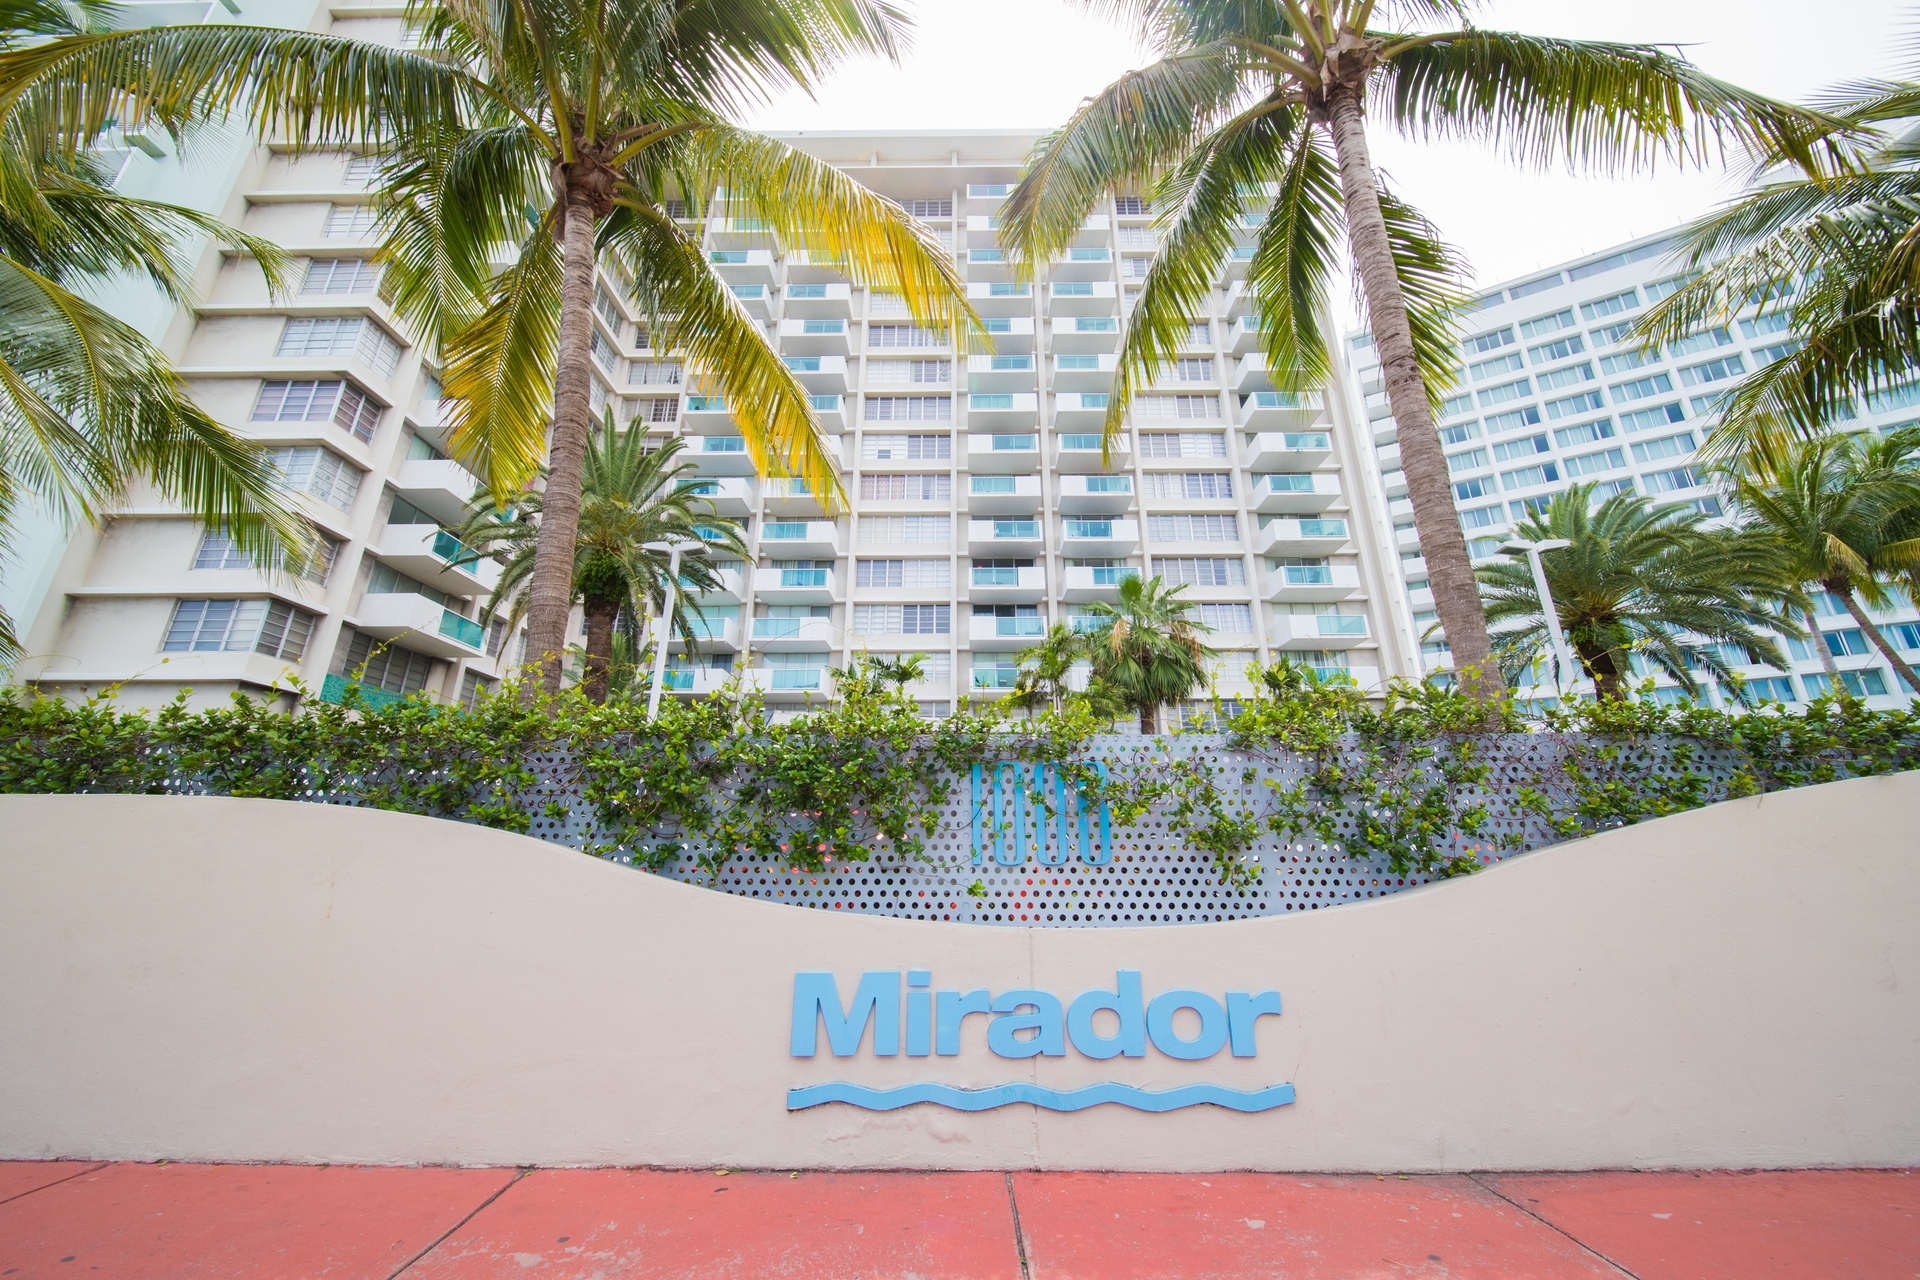 Mirador Miami Beach FL - Photo 5